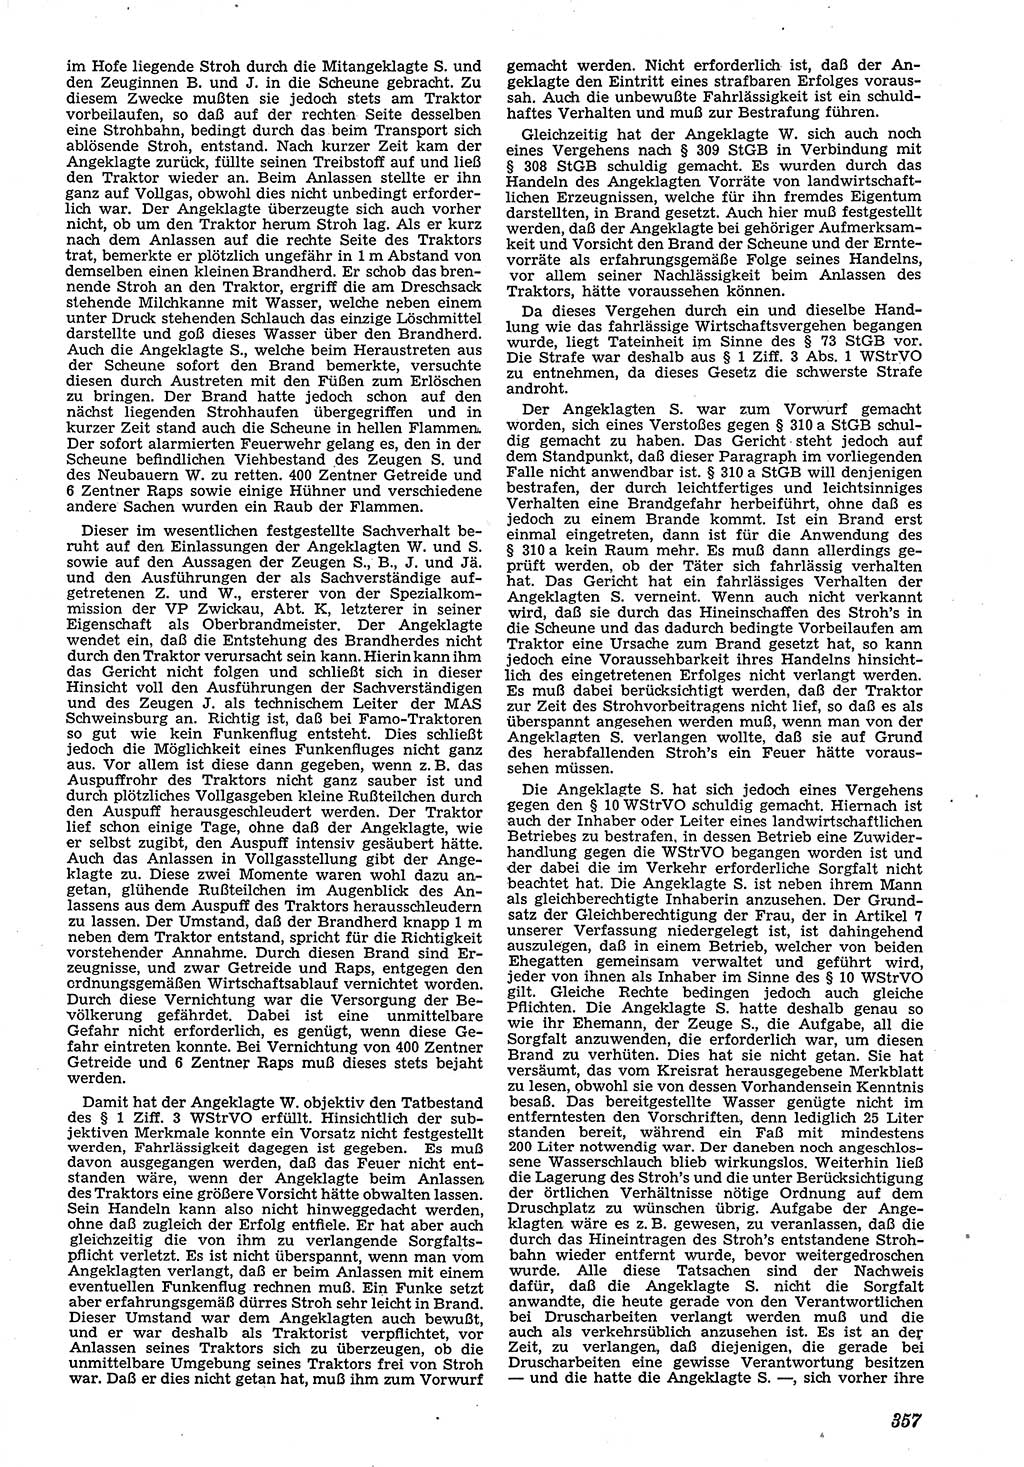 Neue Justiz (NJ), Zeitschrift für Recht und Rechtswissenschaft [Deutsche Demokratische Republik (DDR)], 4. Jahrgang 1950, Seite 357 (NJ DDR 1950, S. 357)